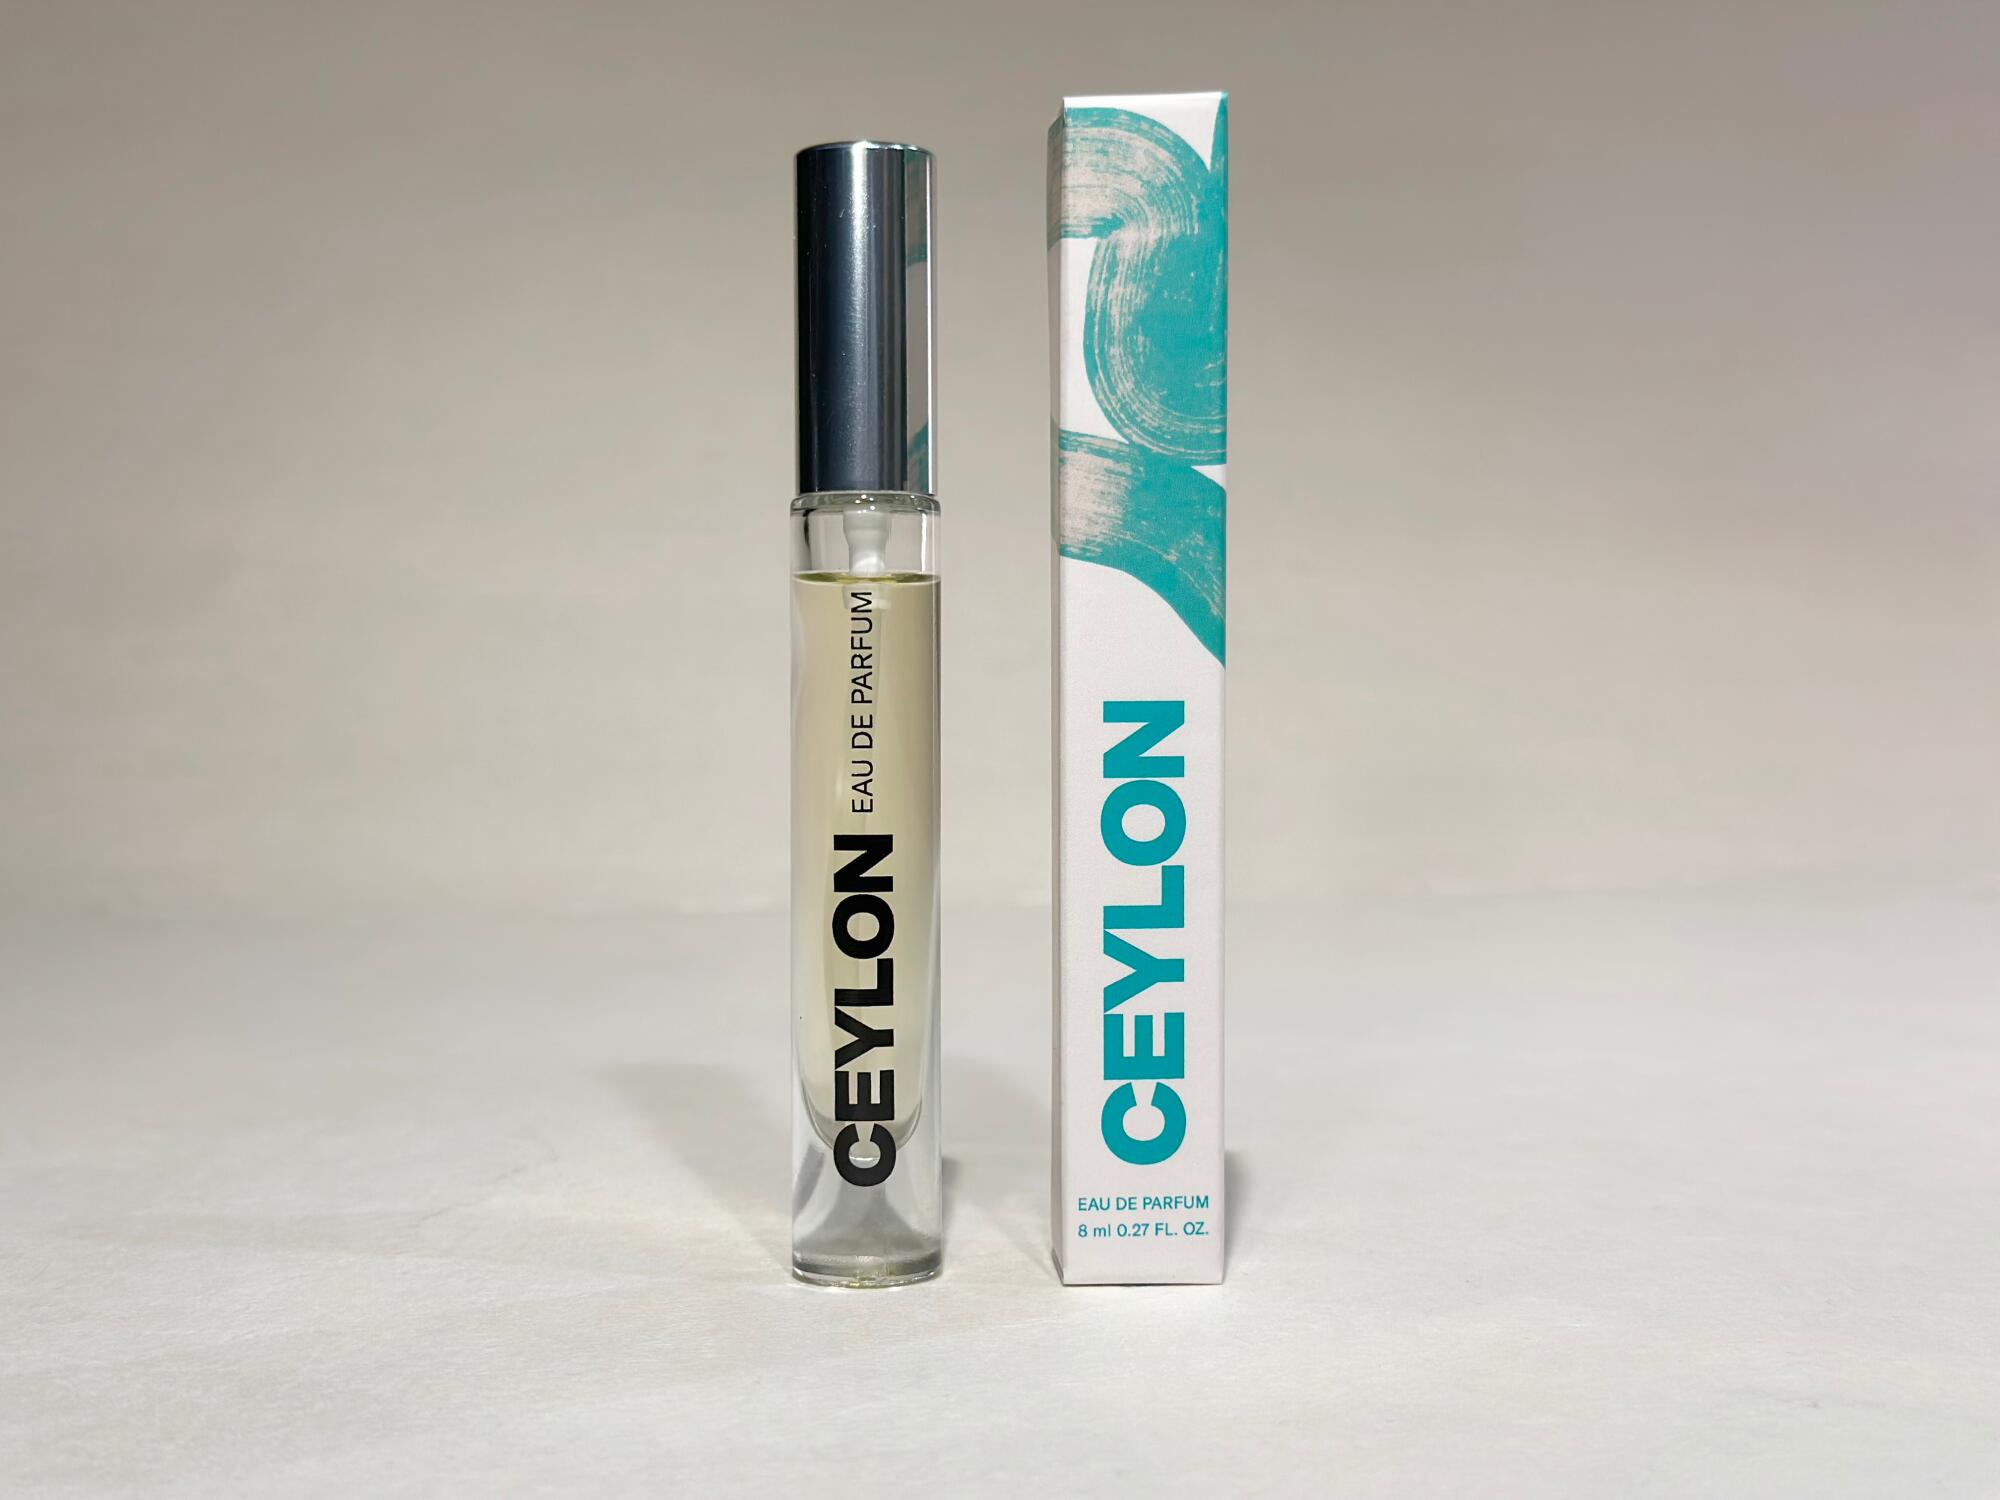 A bottle and container for Ceylon Eau De Parfum.